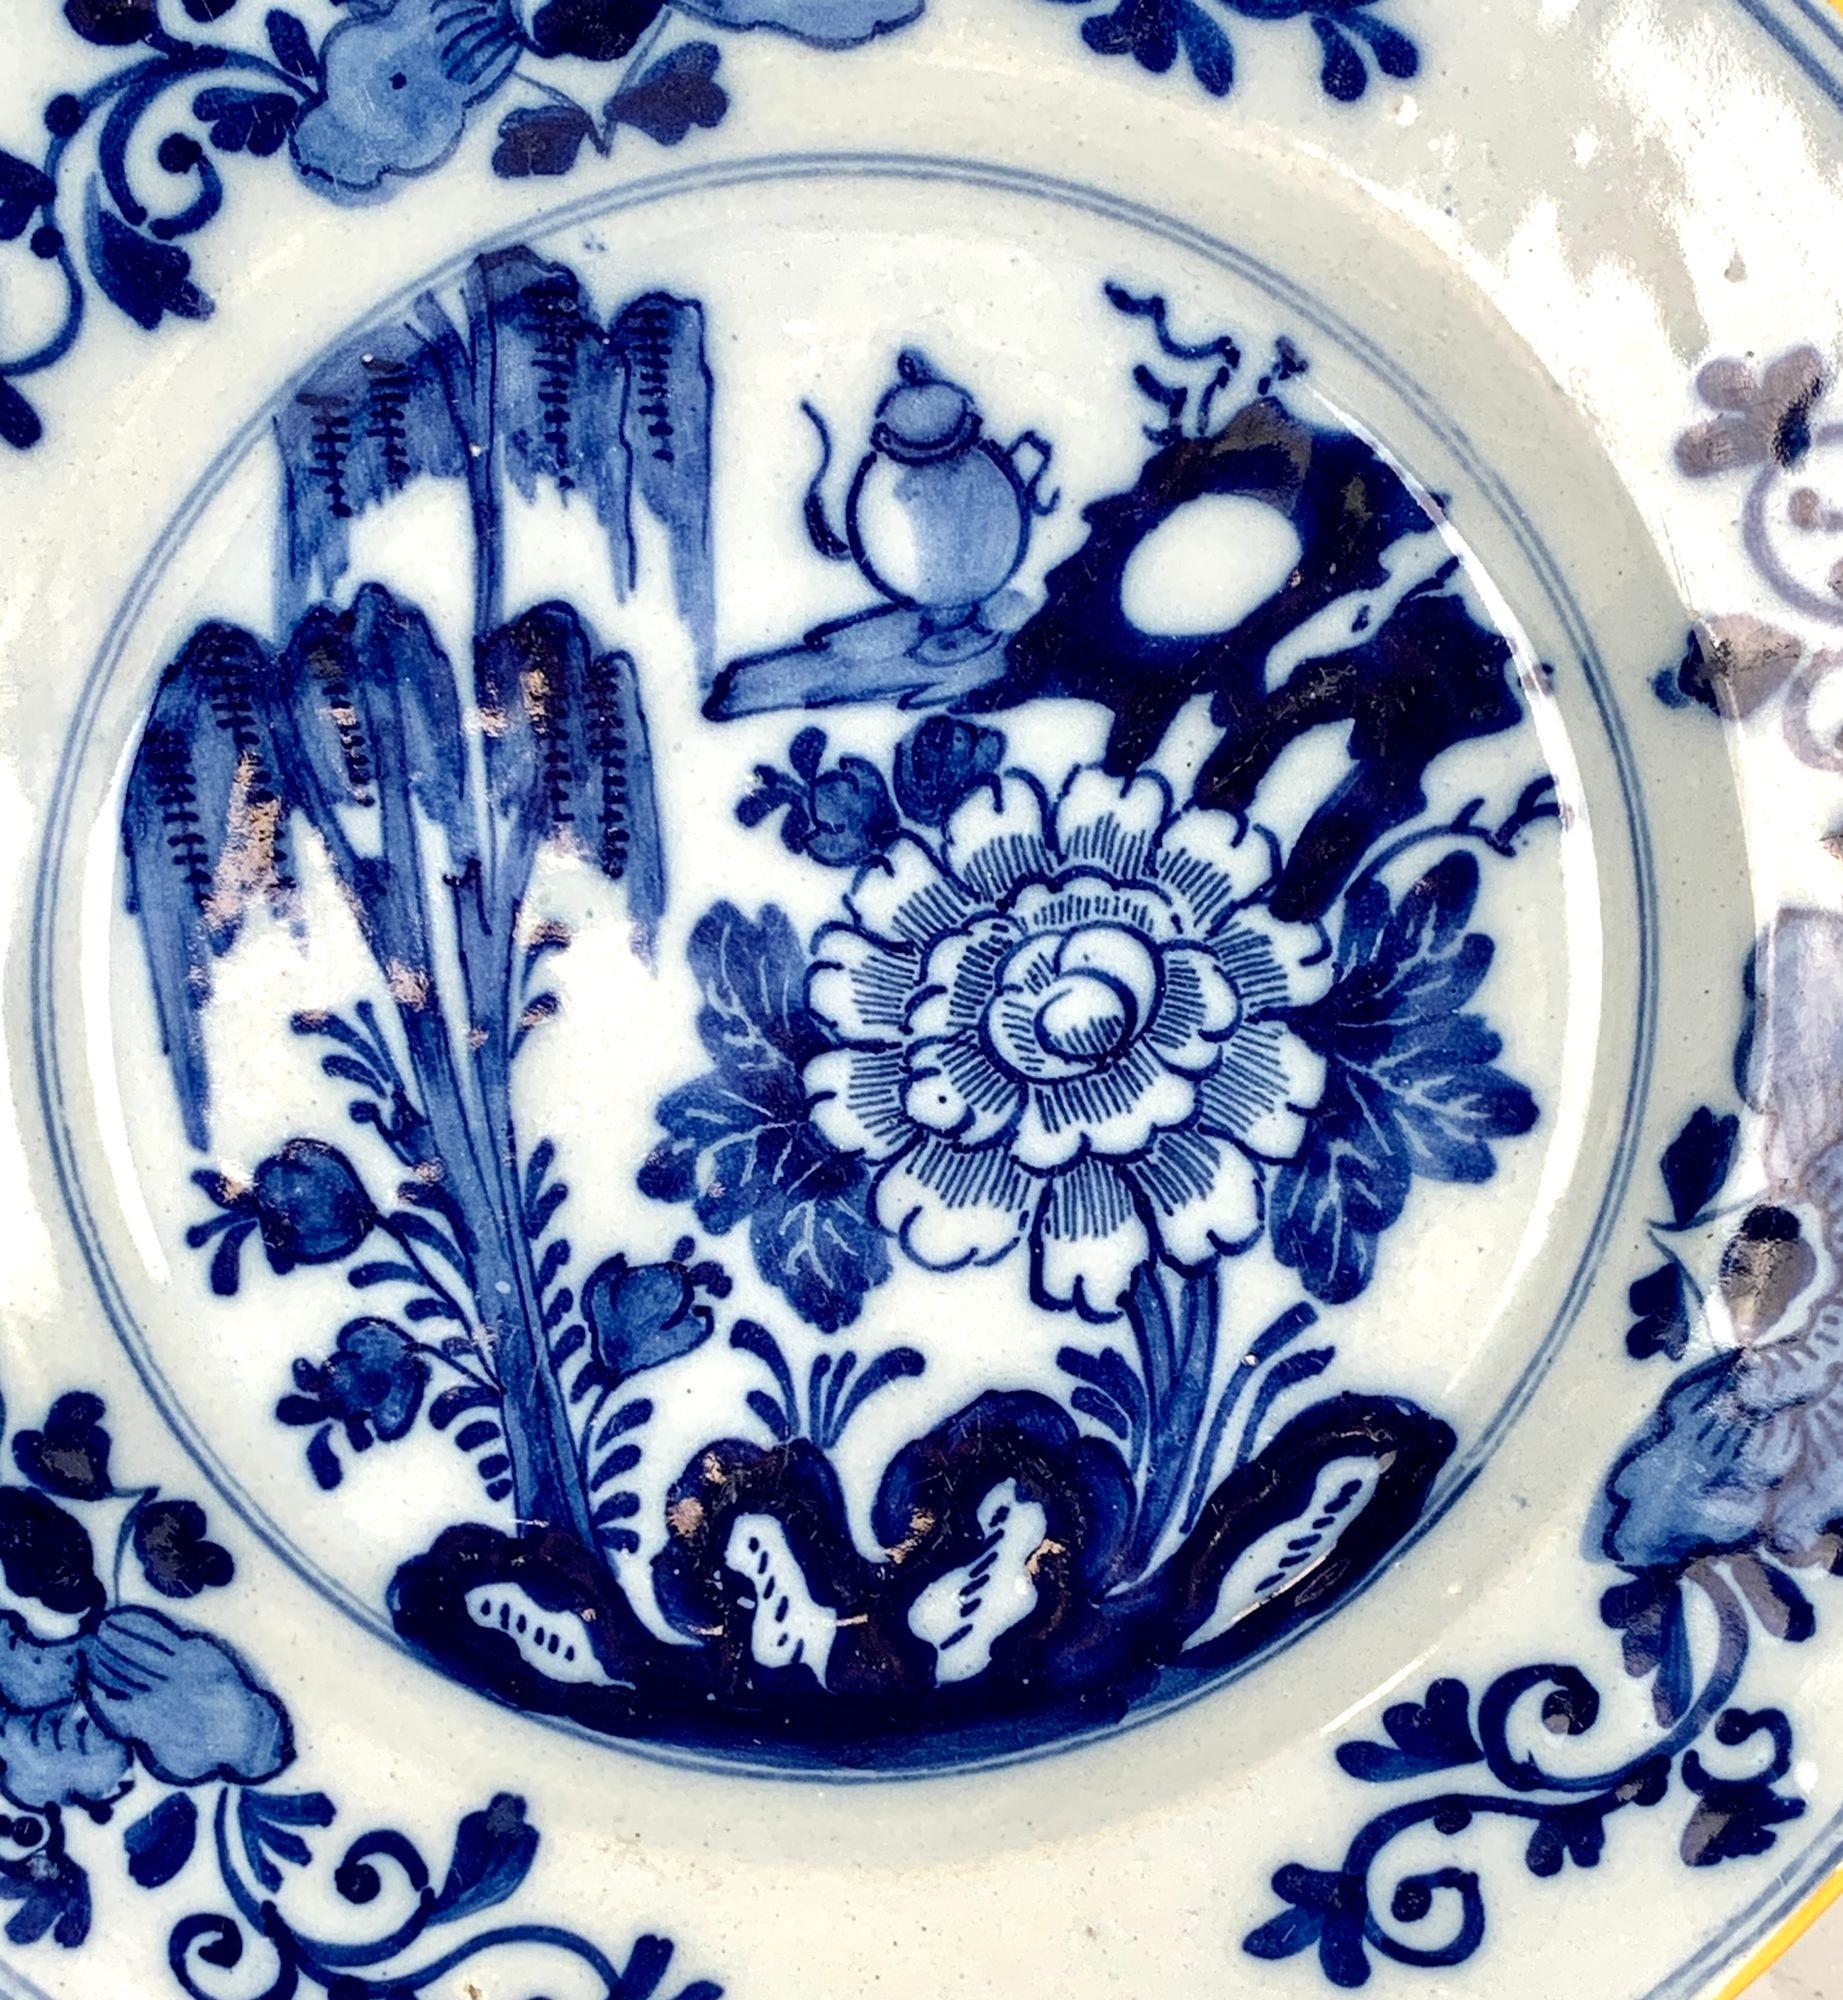 Cette assiette bleue et blanche de Delft a été peinte à la main vers 1800 aux Pays-Bas.
Provenance : Le revers porte la marque de De Porceleyene Claeuw, la fabrique 